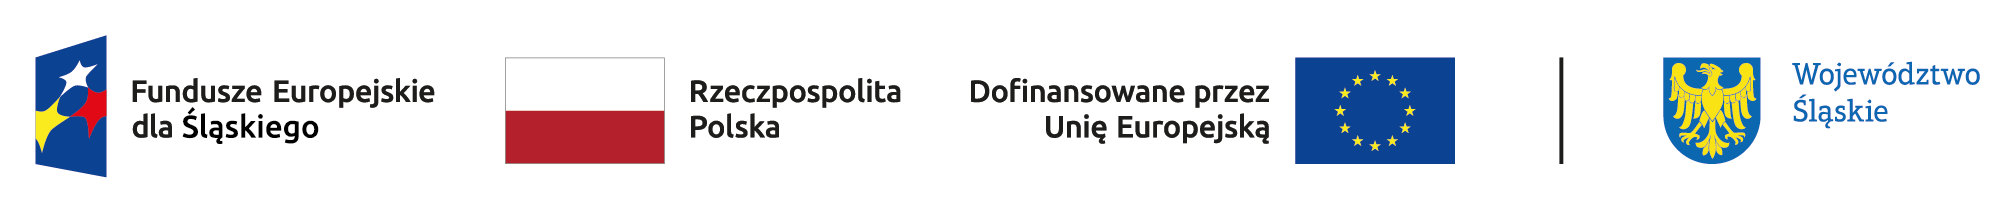 Logotypy projektu Fundusze Europejskie dla Śląskiego 2021-2027